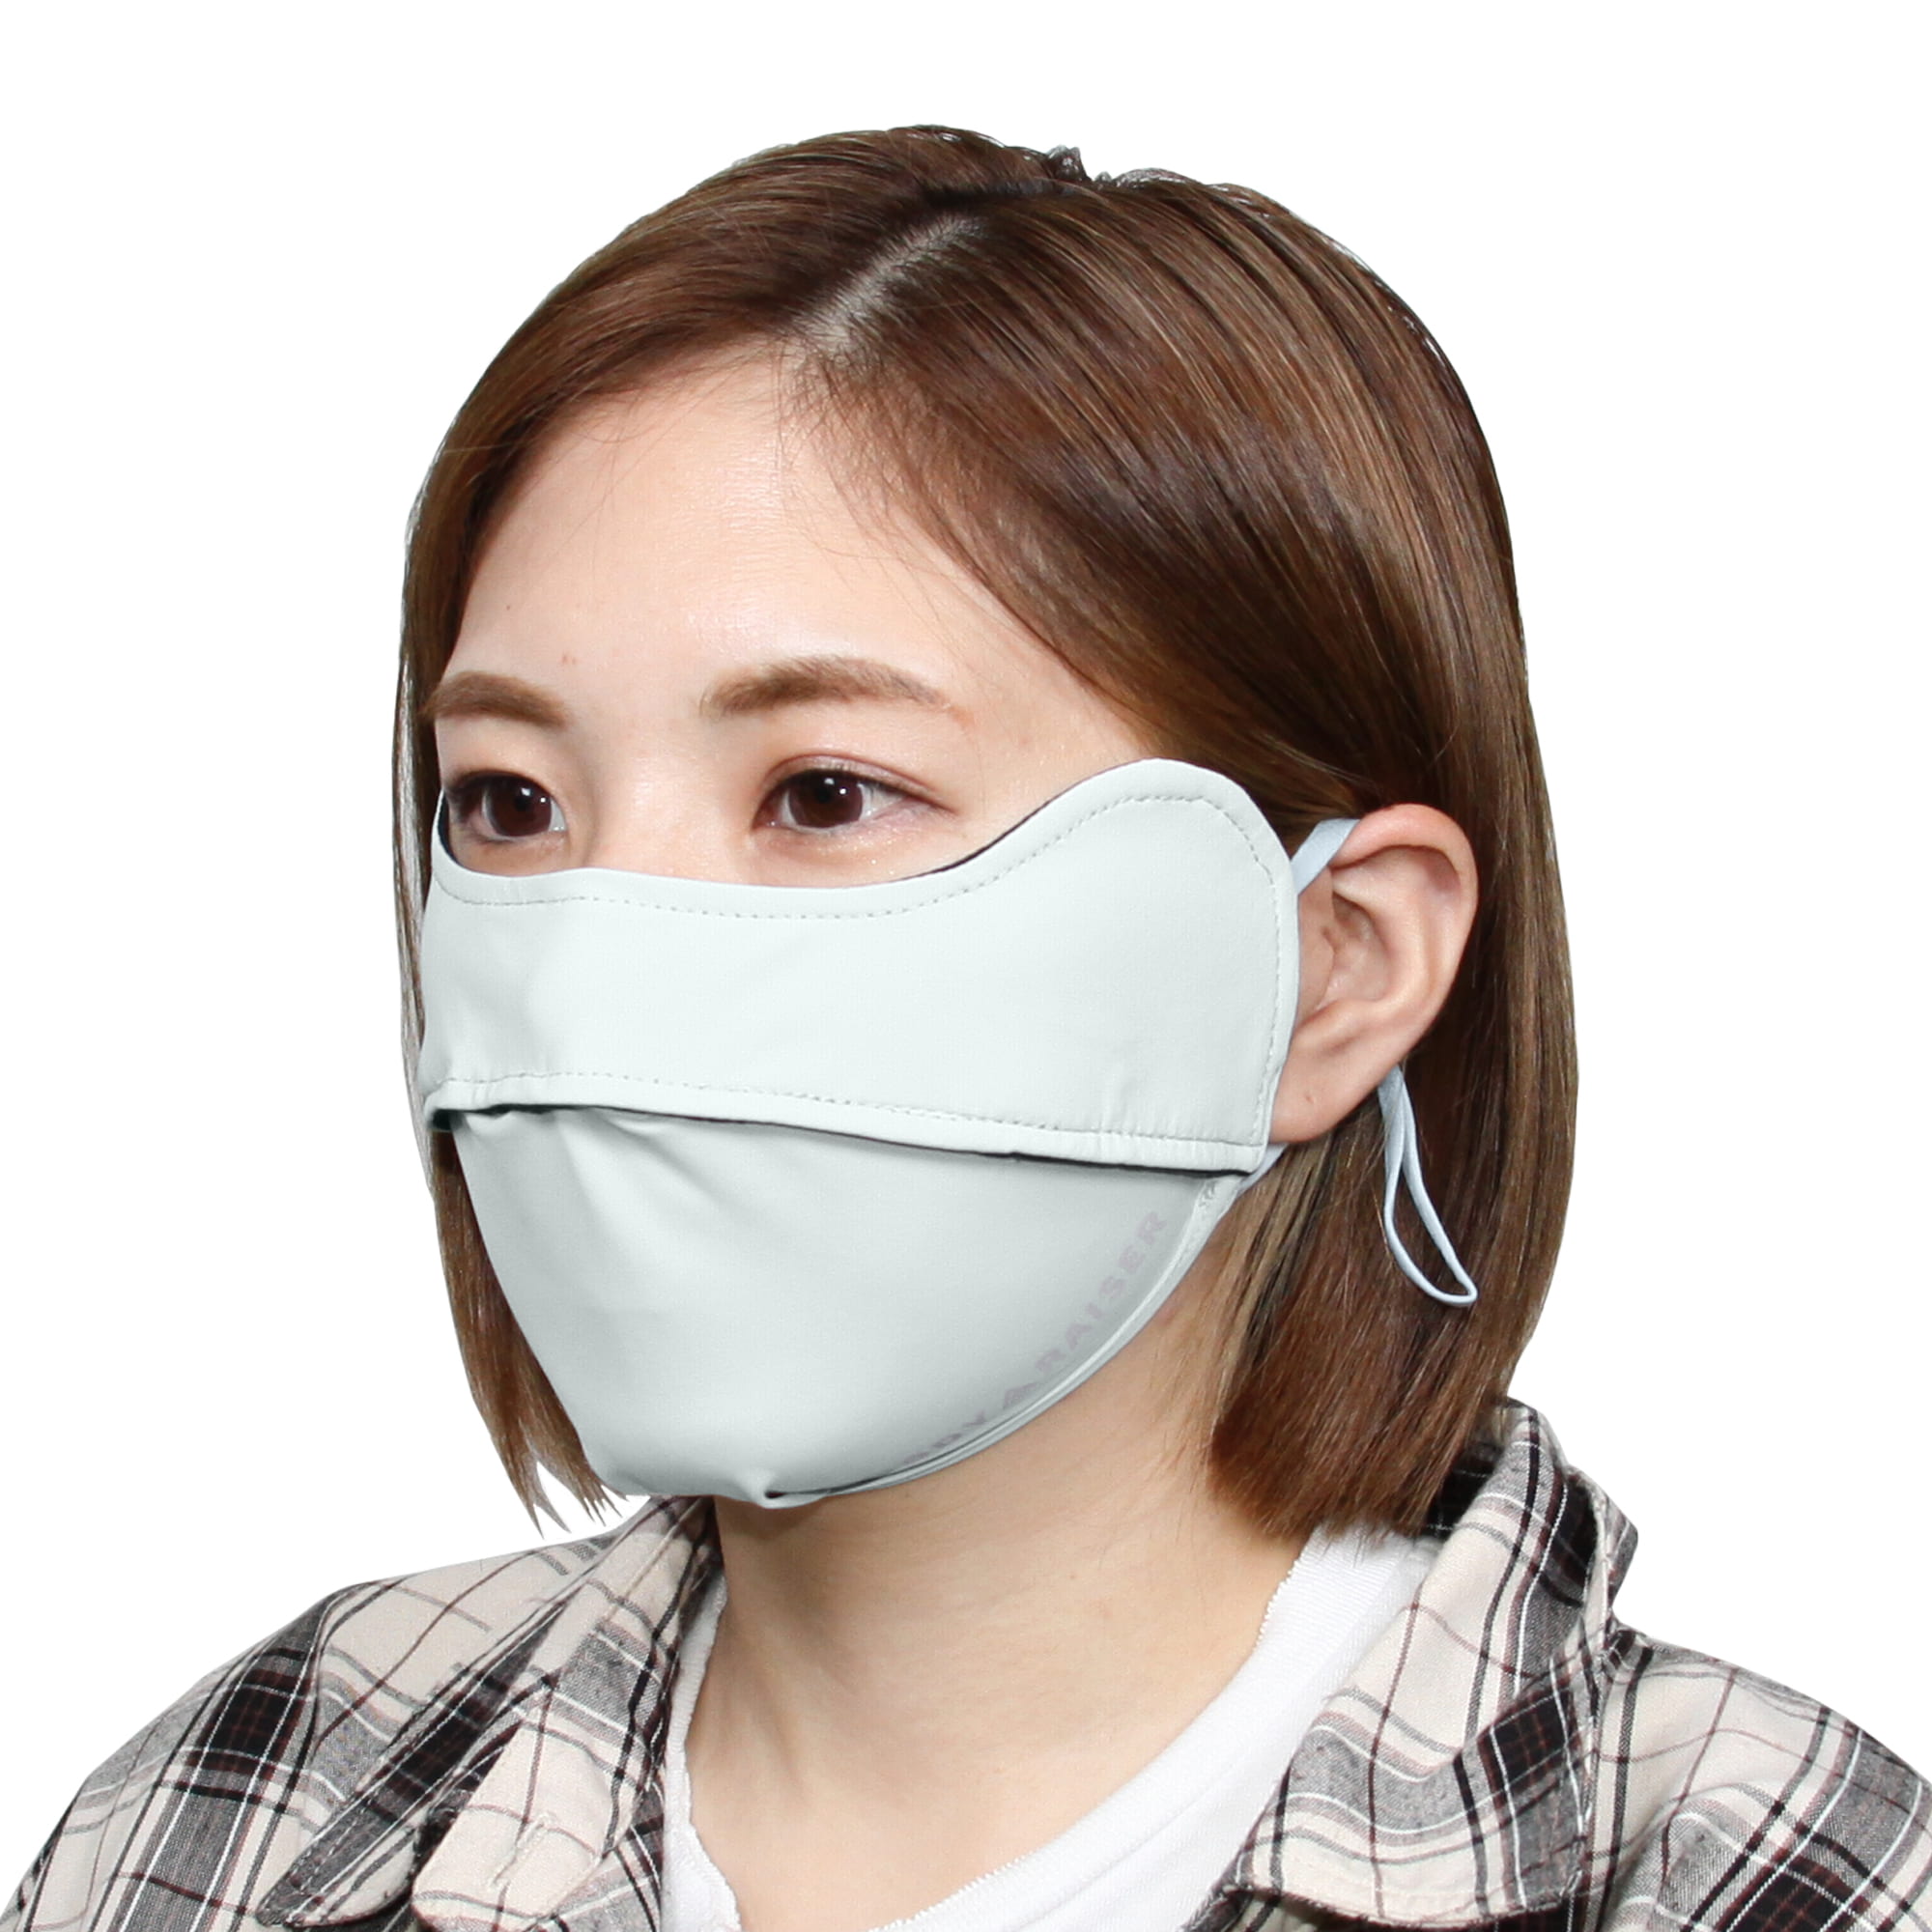 冷感 マスク 鼻穴付き 呼吸穴 uv 接触冷感 マスク 洗える 日焼け防止 uvカット 紫外線対策 おしゃれ 快適マスク ひんやり 「meru1」